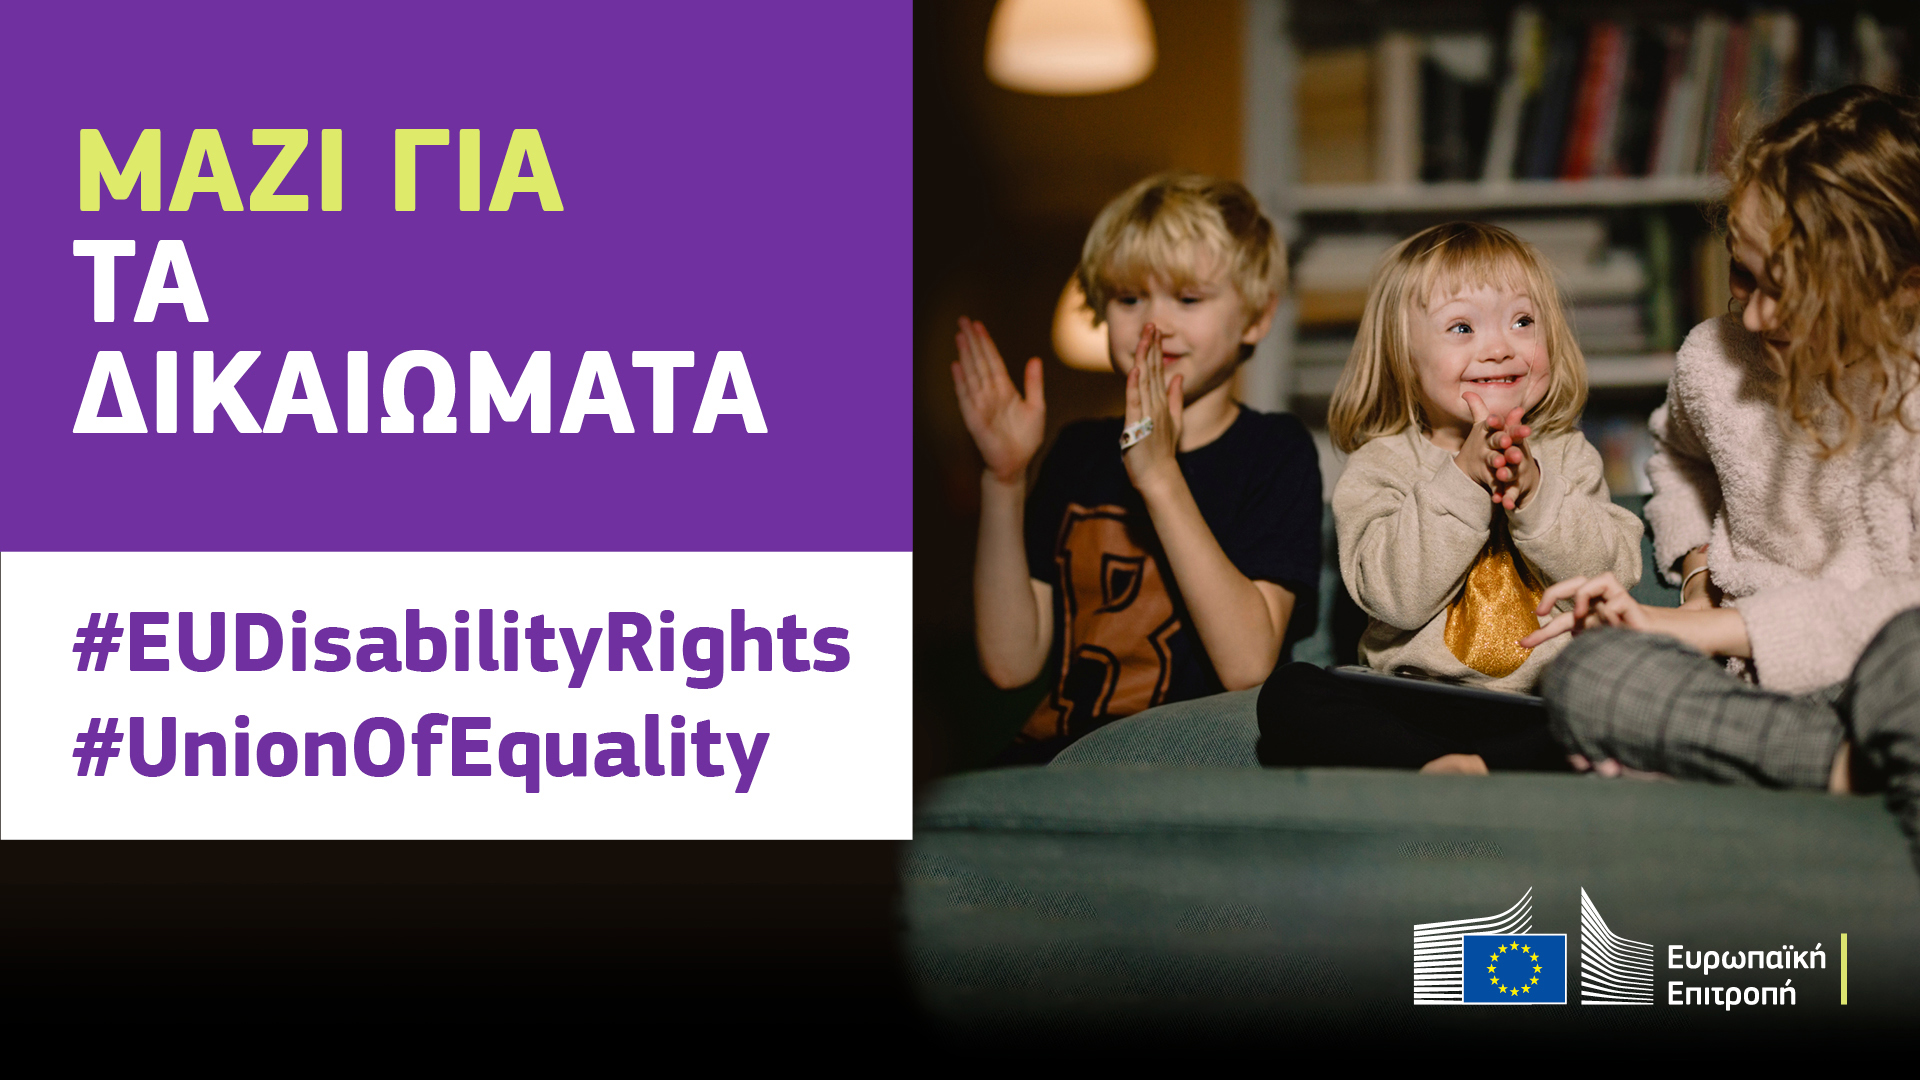 Τρία παιδιά παίζουν μαζί χαρούμενα. Το ένα έχει σύνδρομο Down. Το κείμενο λέει: μαζί για τα δικαιώματα, #EUDisabilityRights, #UnionOfEquality.